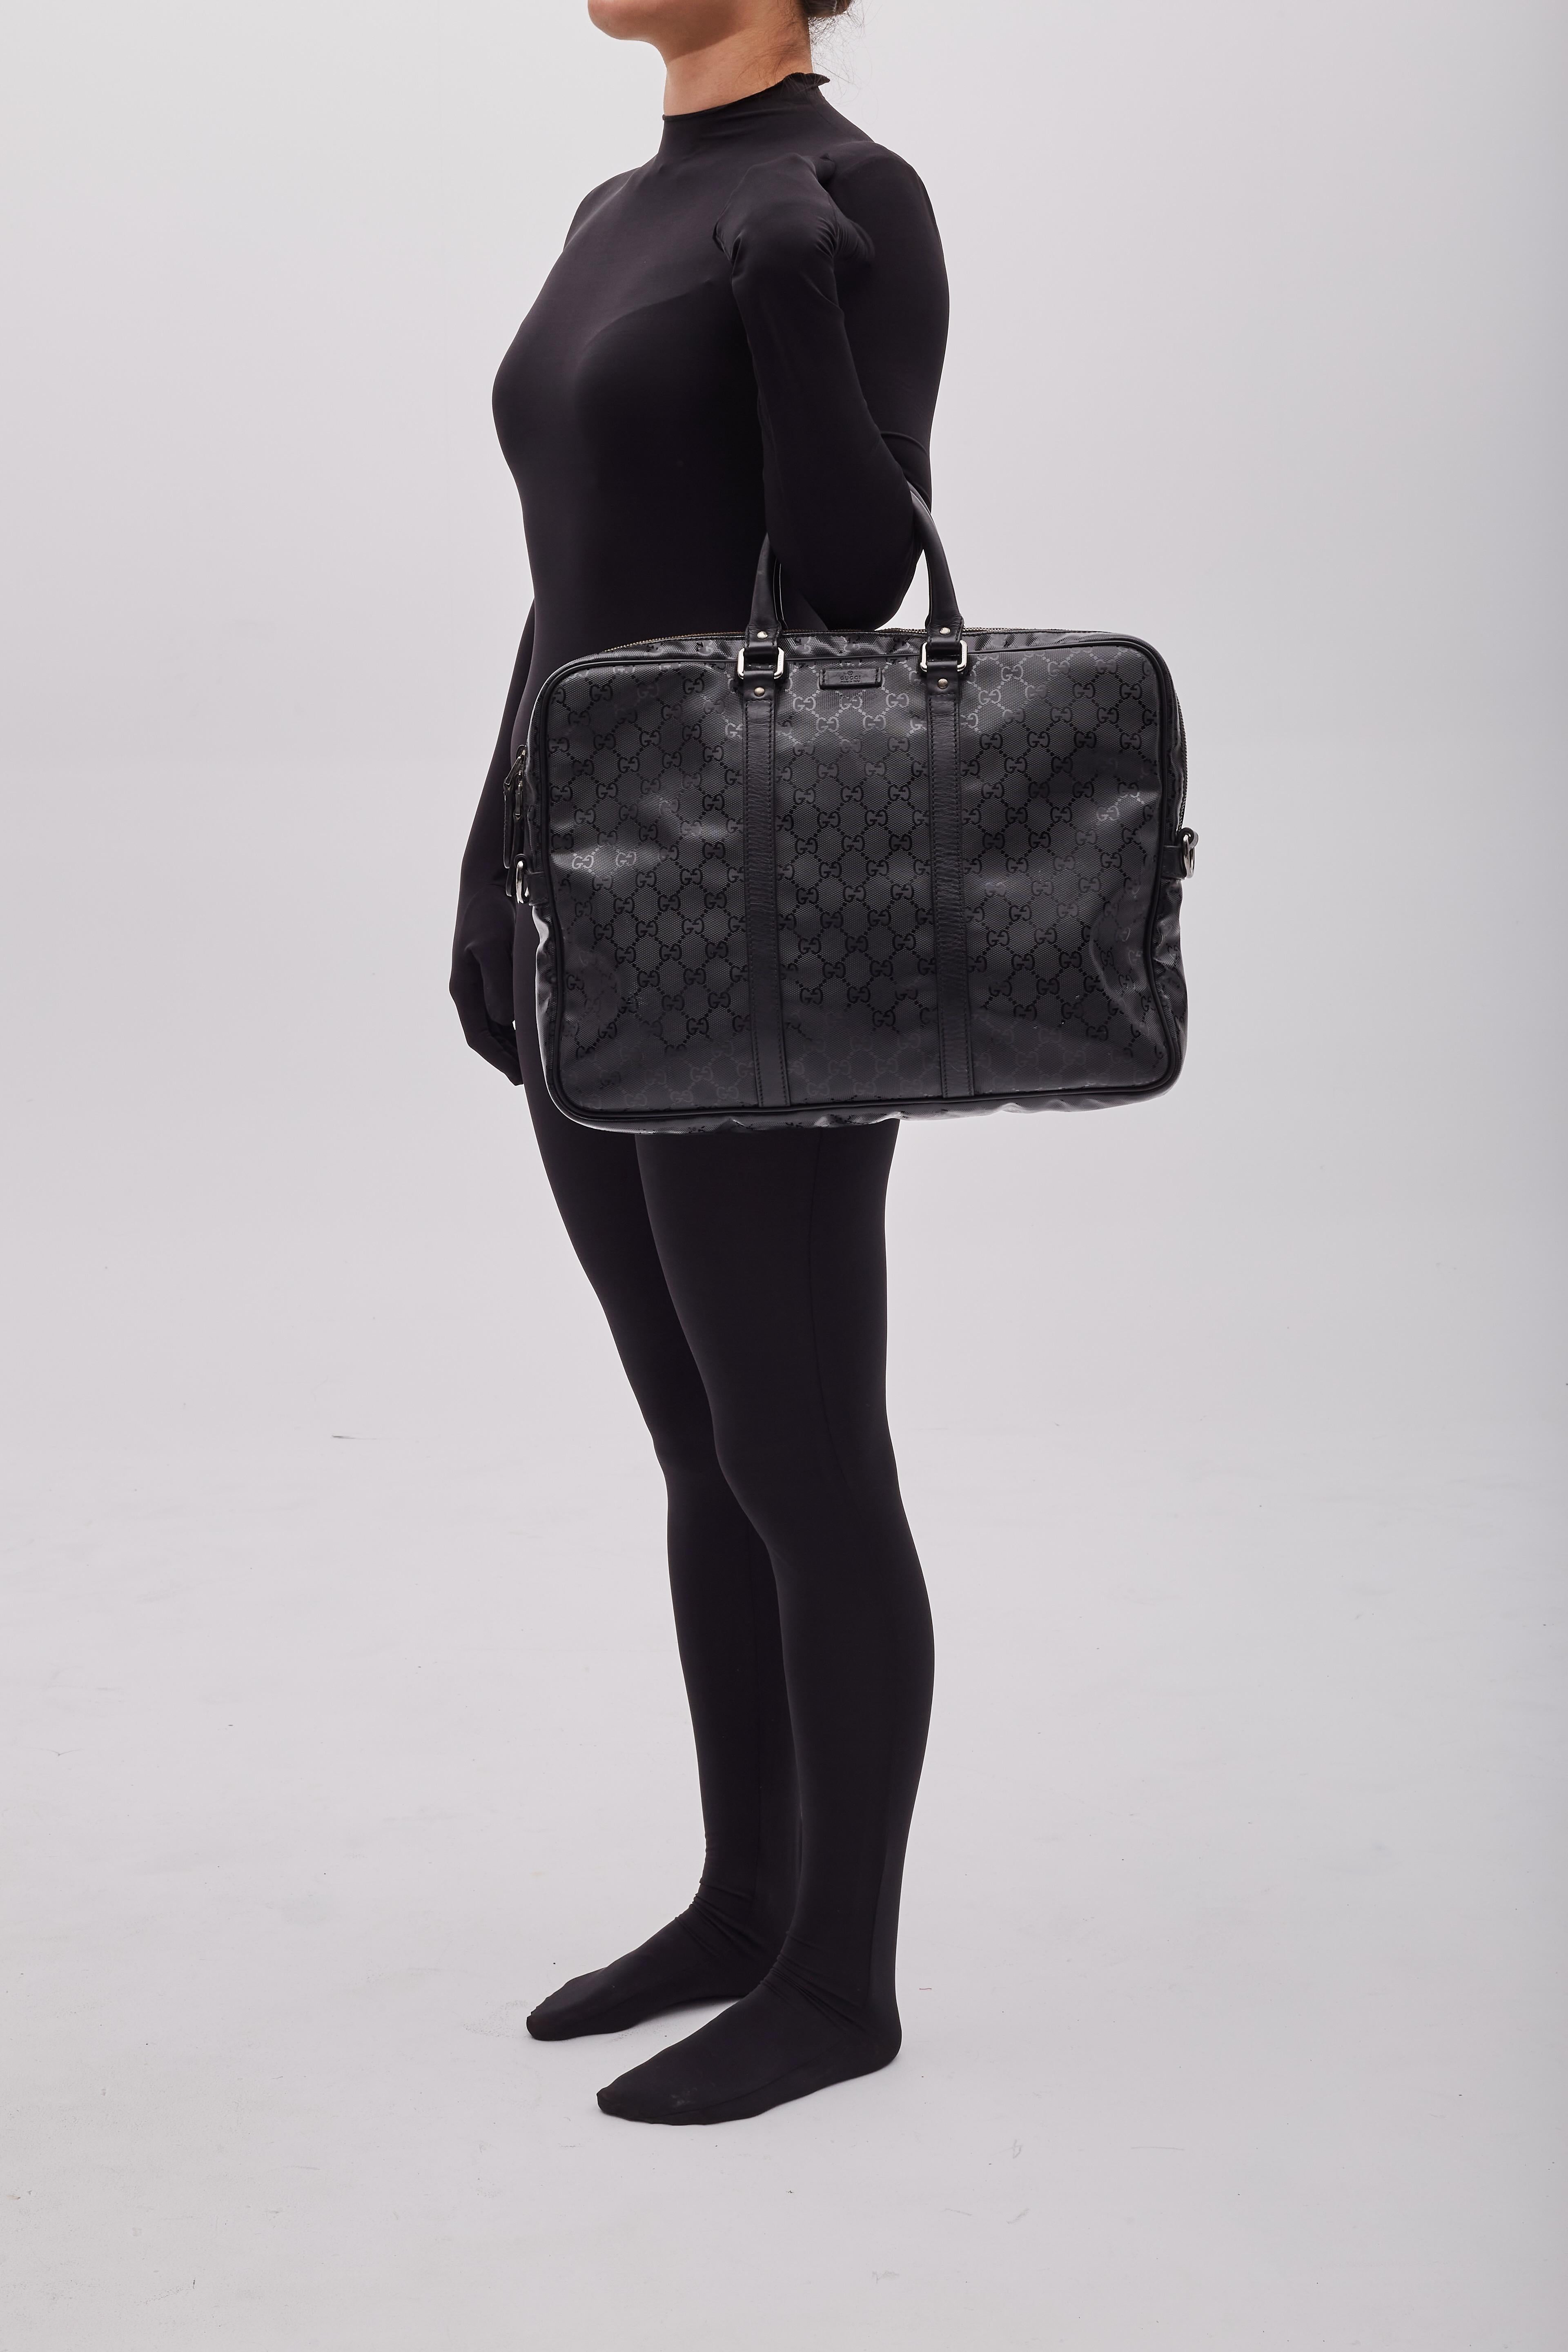 Diese Gucci Aktentasche zeichnet sich durch schwarzes, mit Monogrammen beschichtetes Segeltuch, Lederdetails, zwei gerollte Ledergriffe, einen Reißverschluss mit doppelter Lasche, silberfarbene Beschläge und ein schwarzes Segeltuchfutter mit Taschen